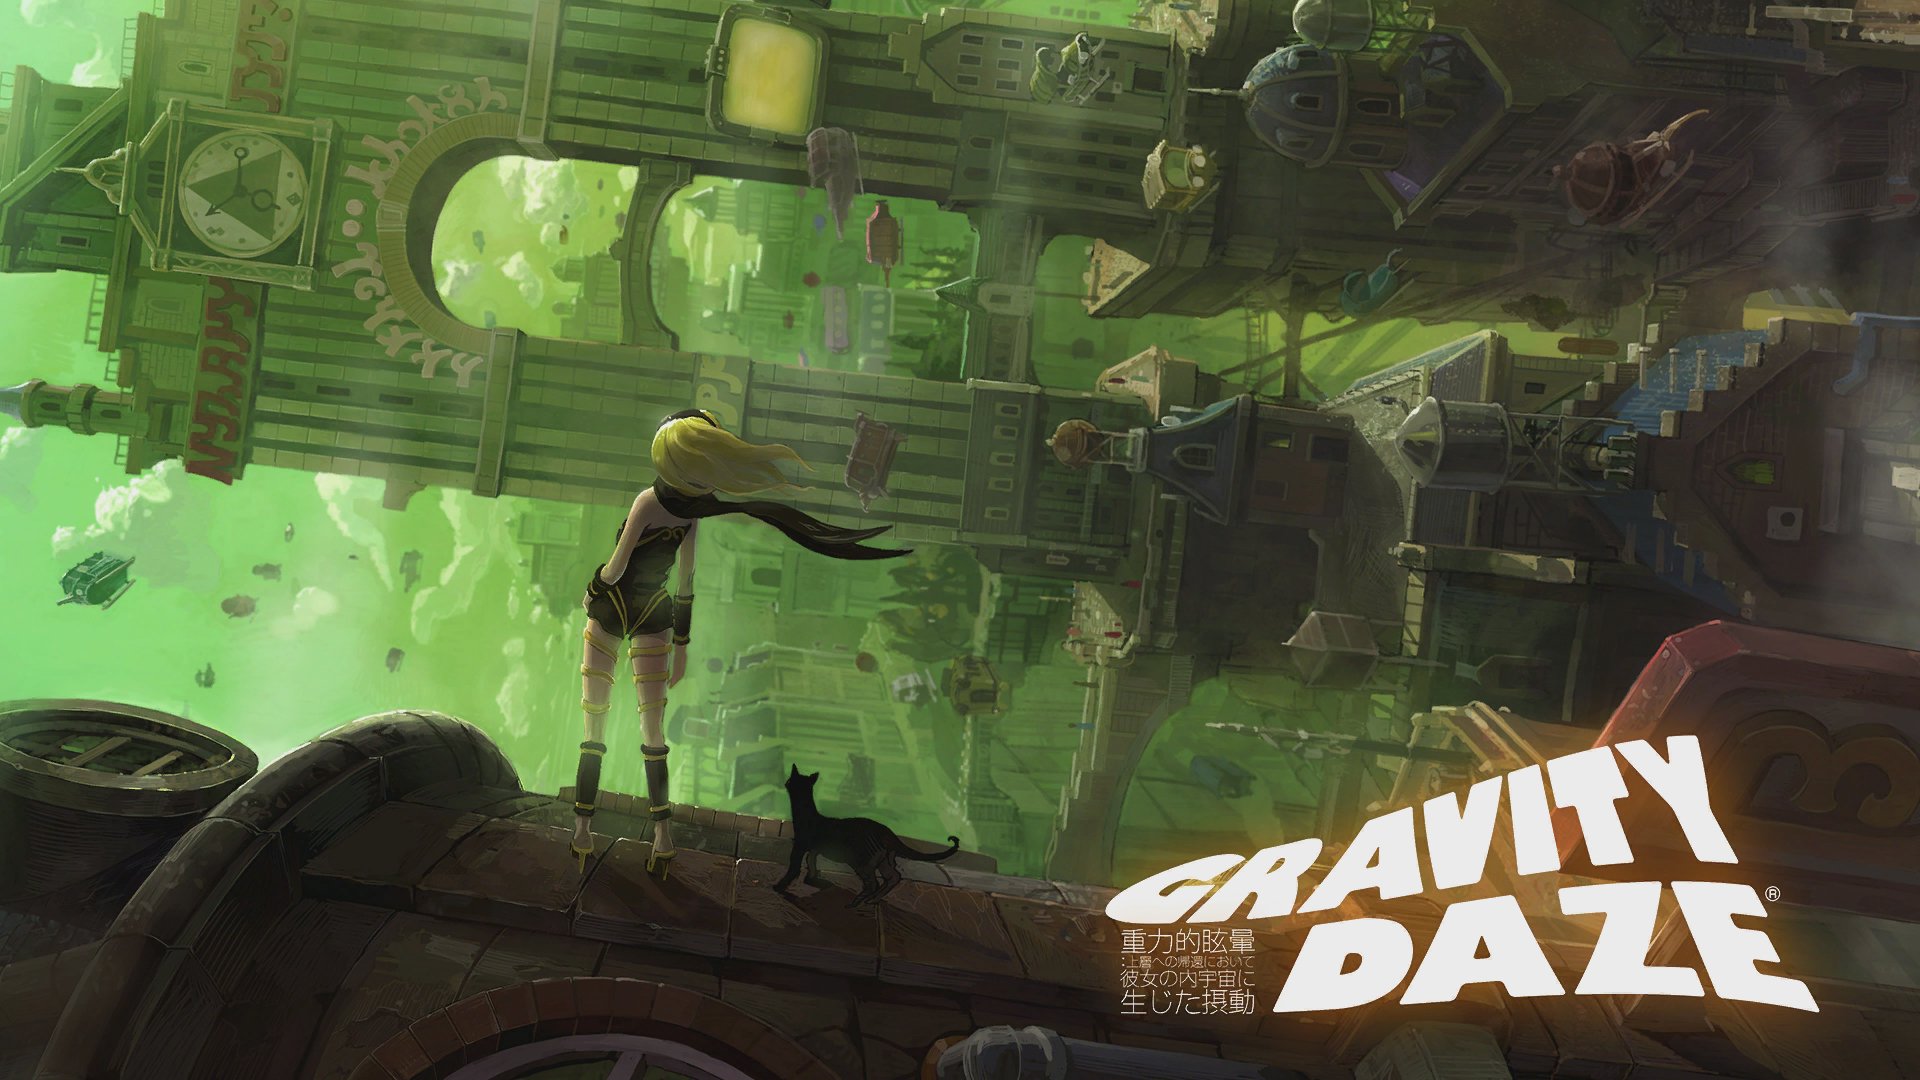 تويتر れんか على تويتر Gravity Daze シリーズ 公式アートブック ドゥヤ レヤヴィ サーエジュ 喜んだり 悩んだり 3月21日発売 3996円 緒賀岳志氏によるカバーイラストのほか 描きおろしコミック Gravity Dream も収録 Gravitydaze グラビティデイズ